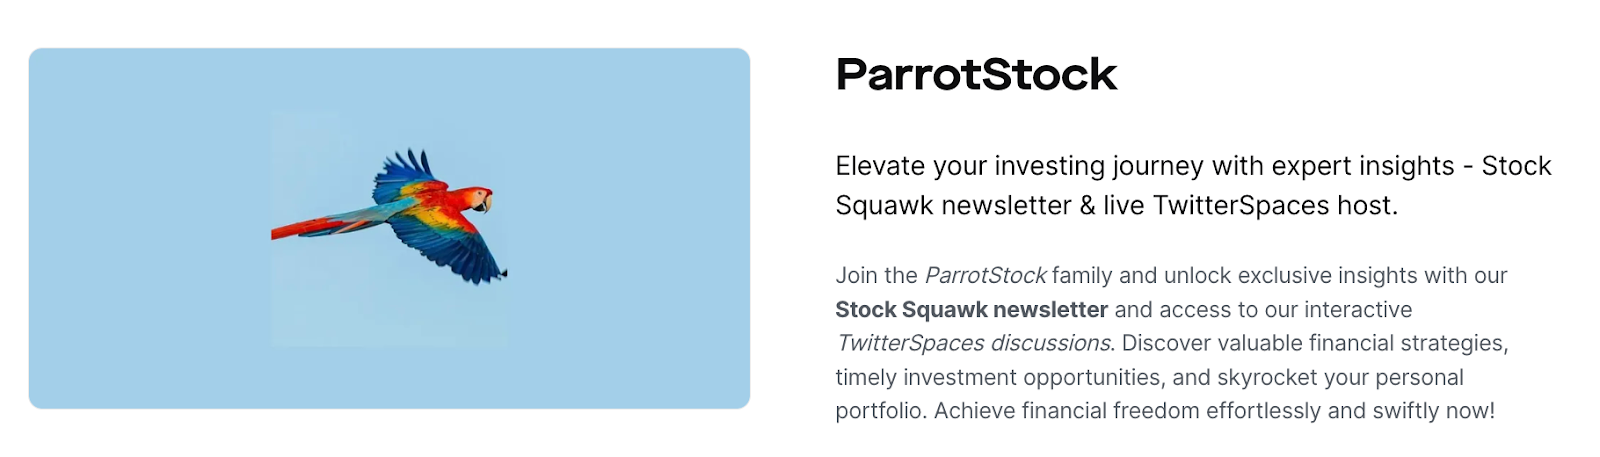 parrotstock